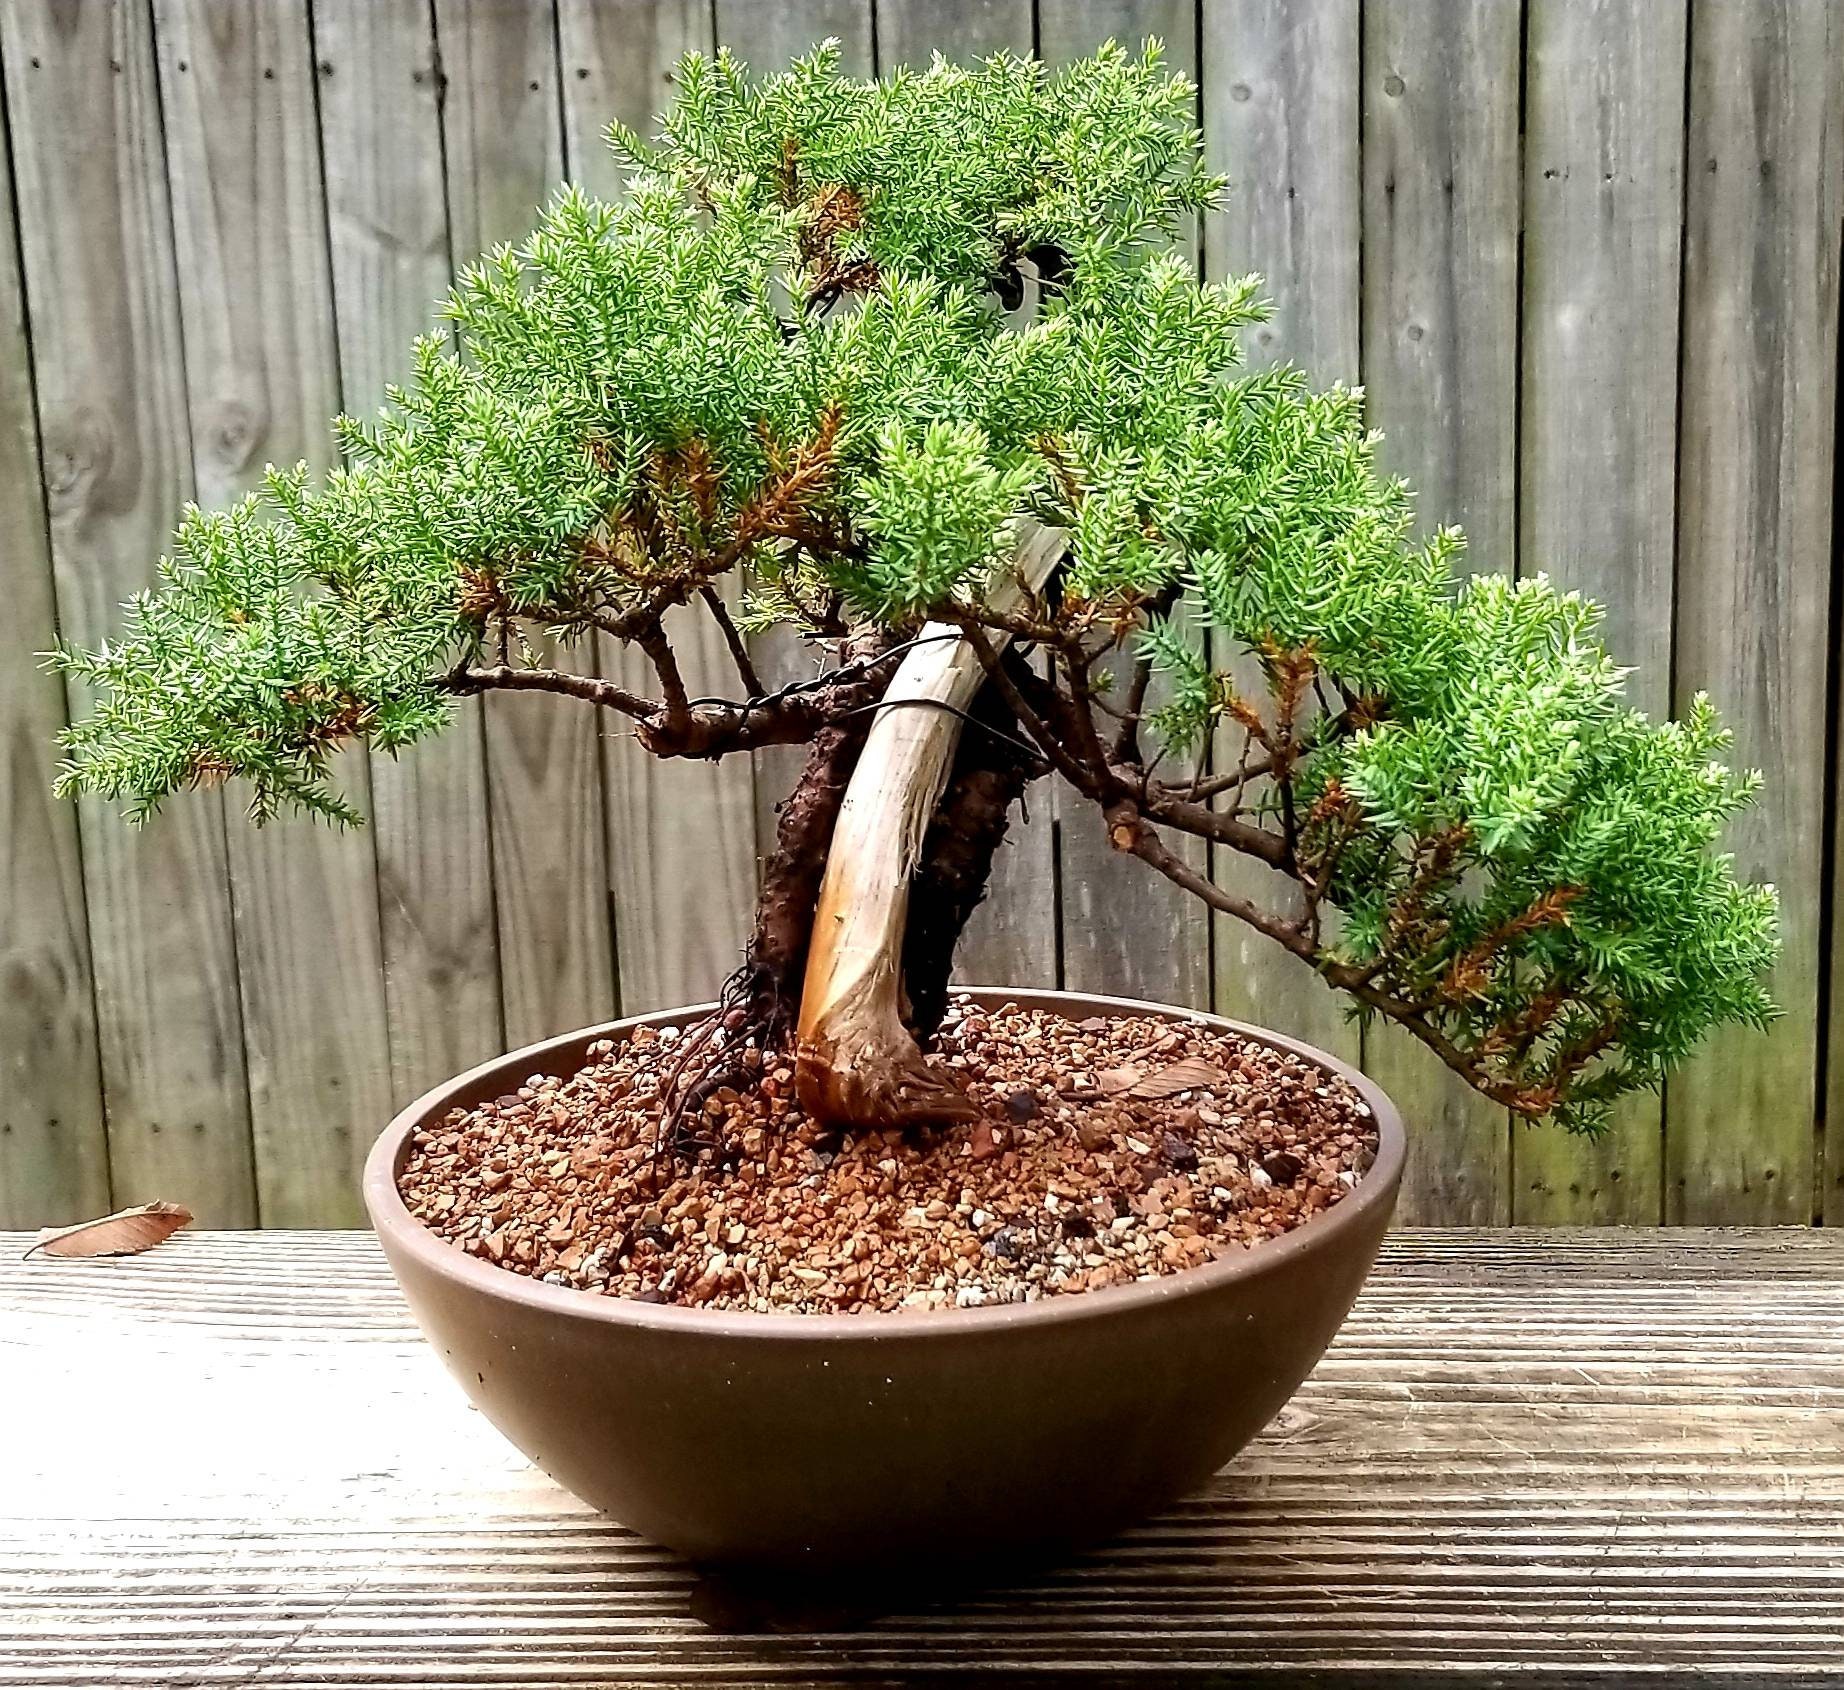 Genévrier bonzai bonsai Japonais Chinois Chine Japon orient orient